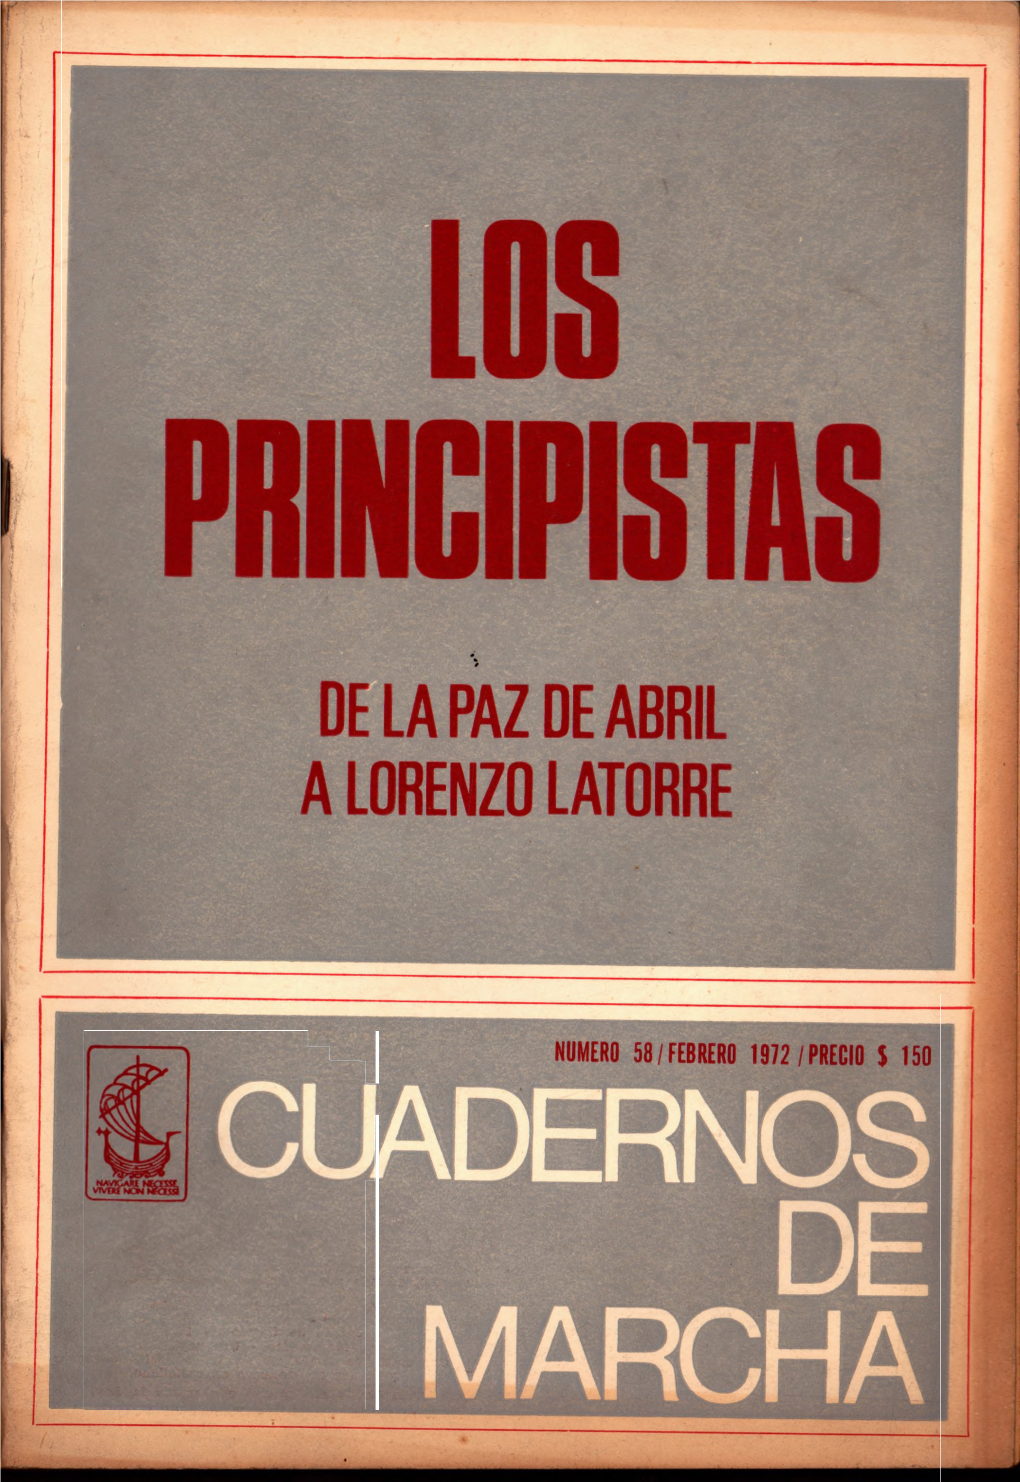 ADERNOS DE MARCHA Cuadernos De MARCHA Es Una Publicación Uruguaya Mensual, Editada Por MARCHA En Tall